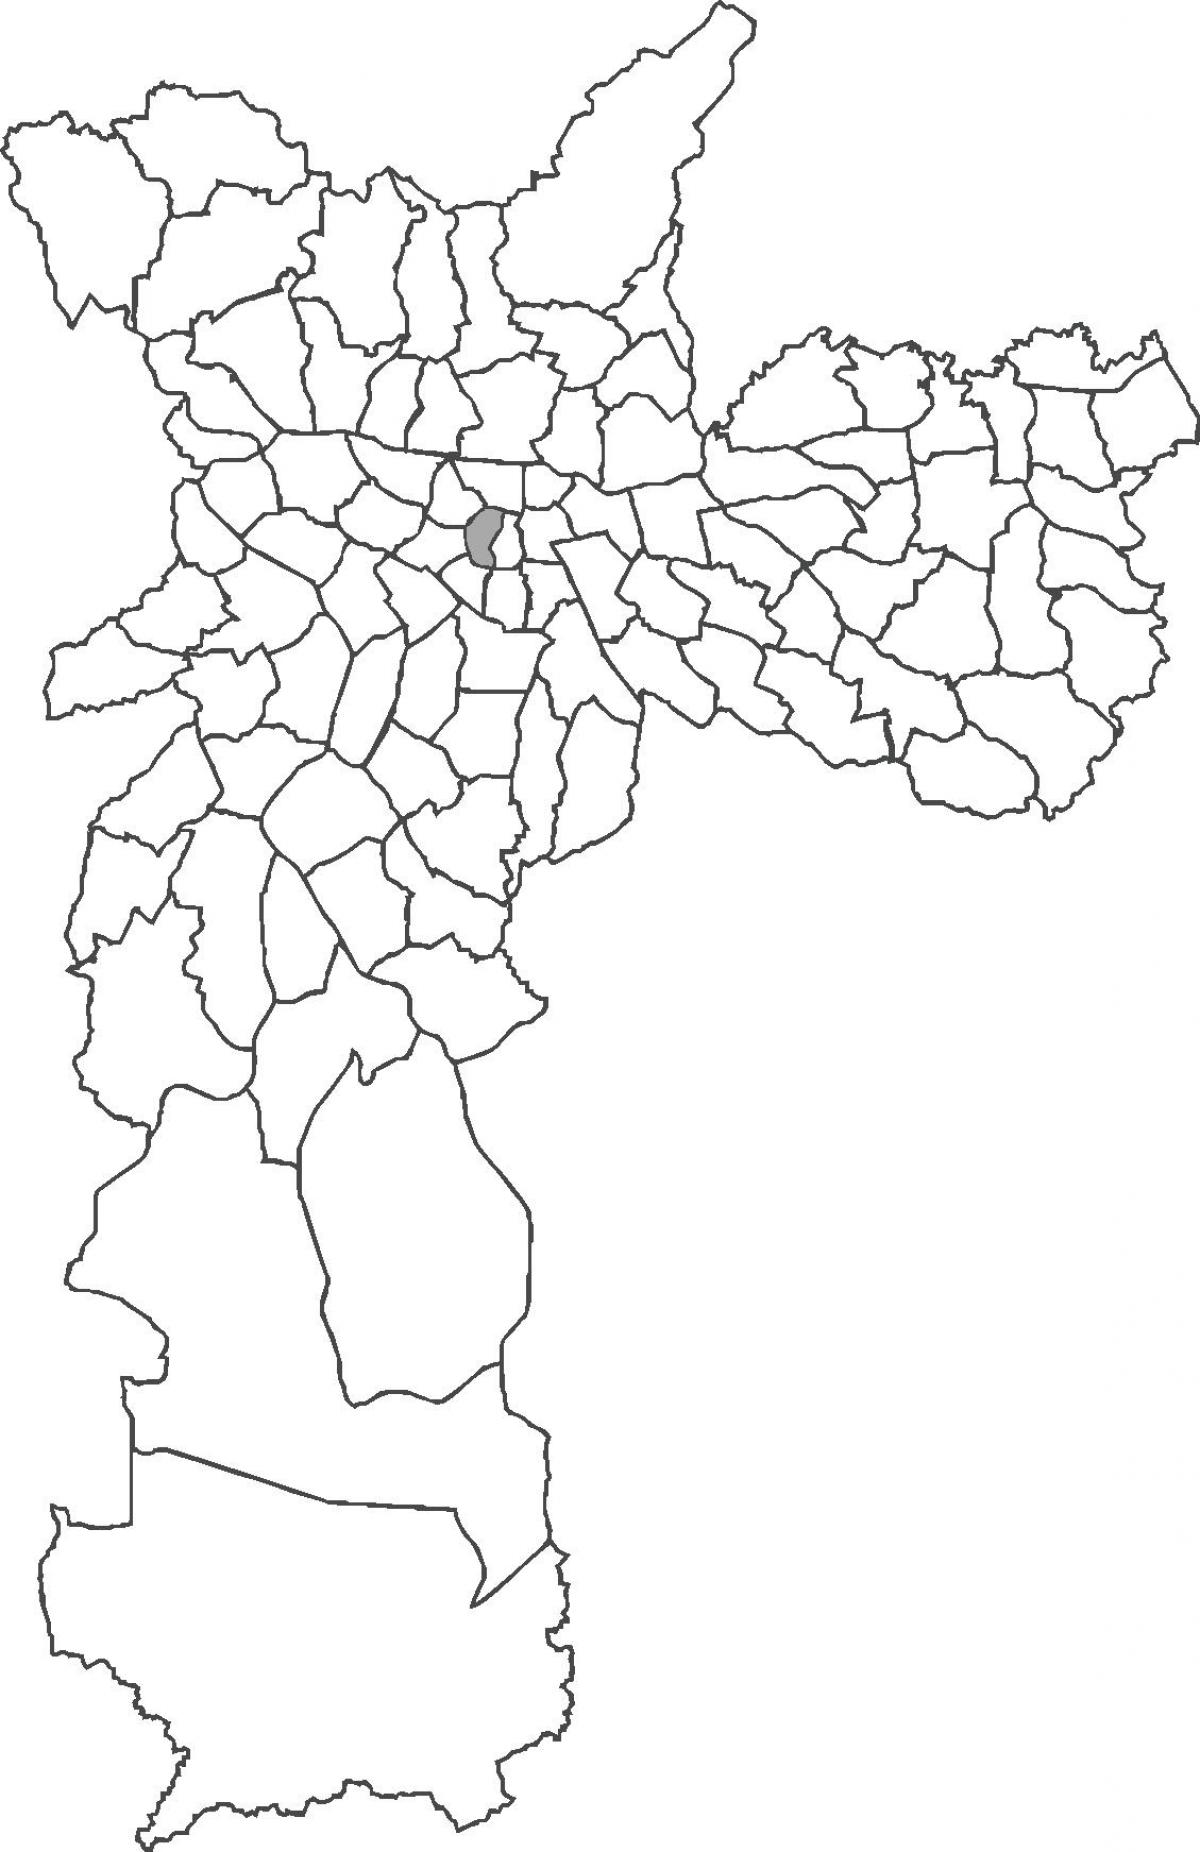 Zemljevid República okrožno